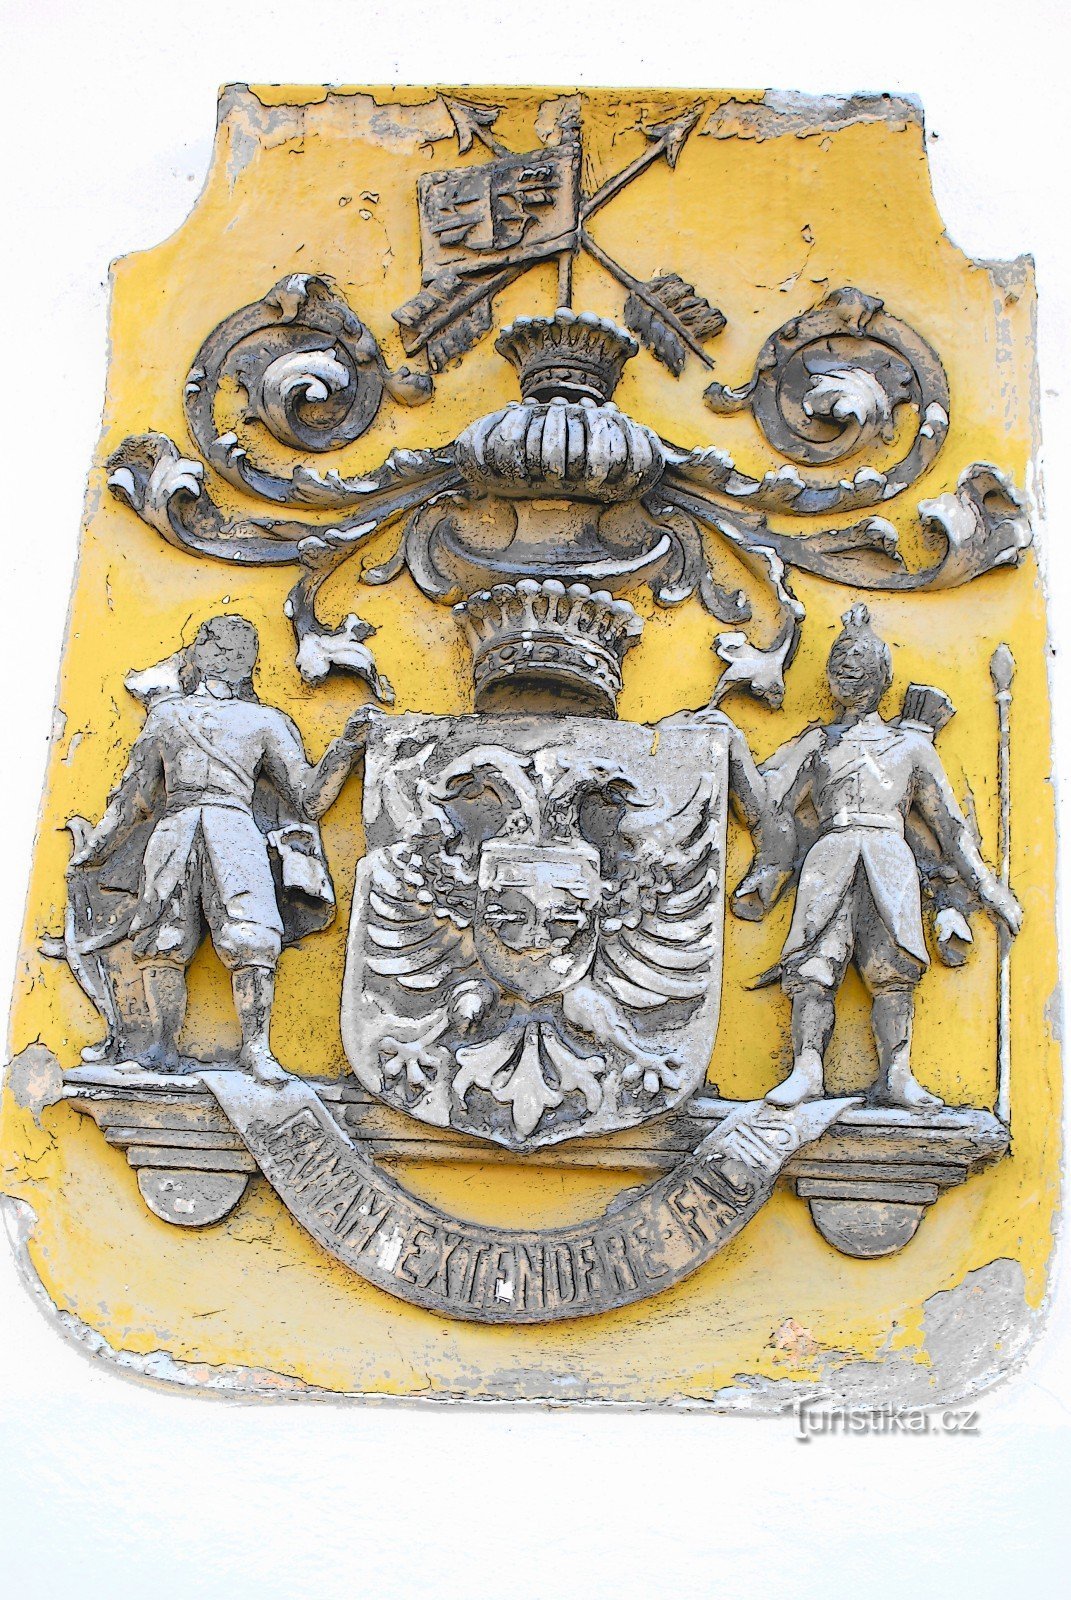 拉祖莫夫斯基家族的徽章